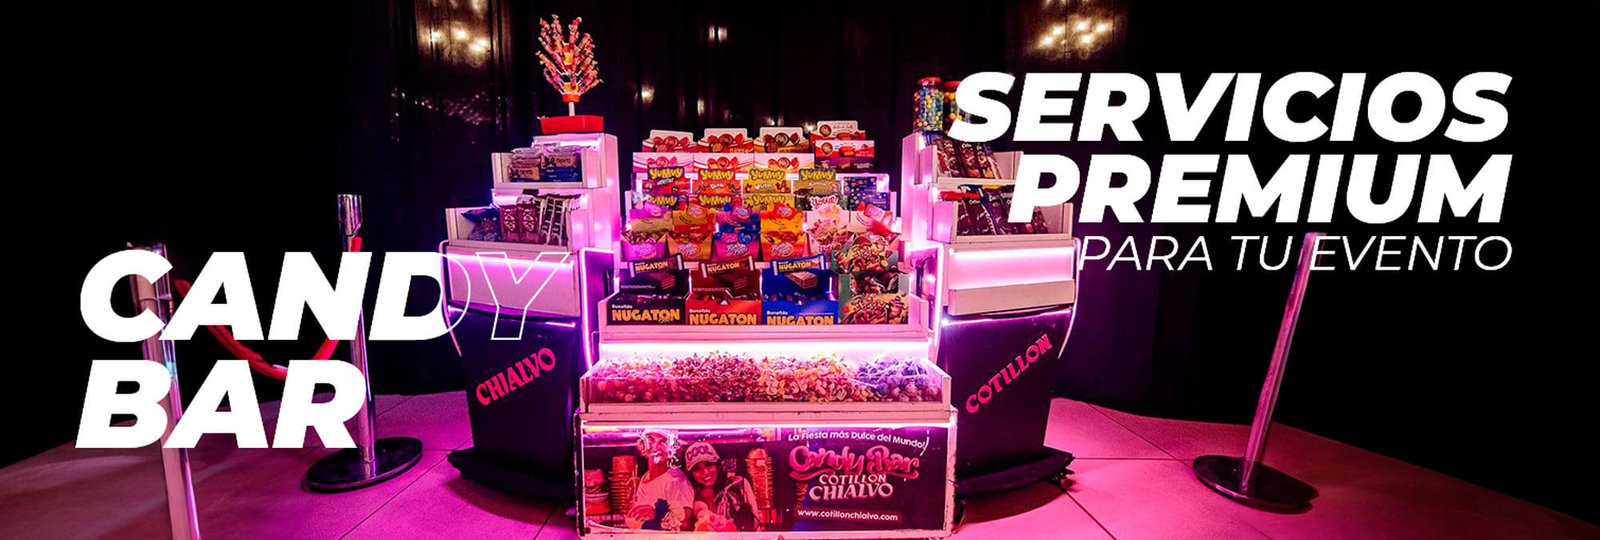 Banner-Servicios---Candy-Bar